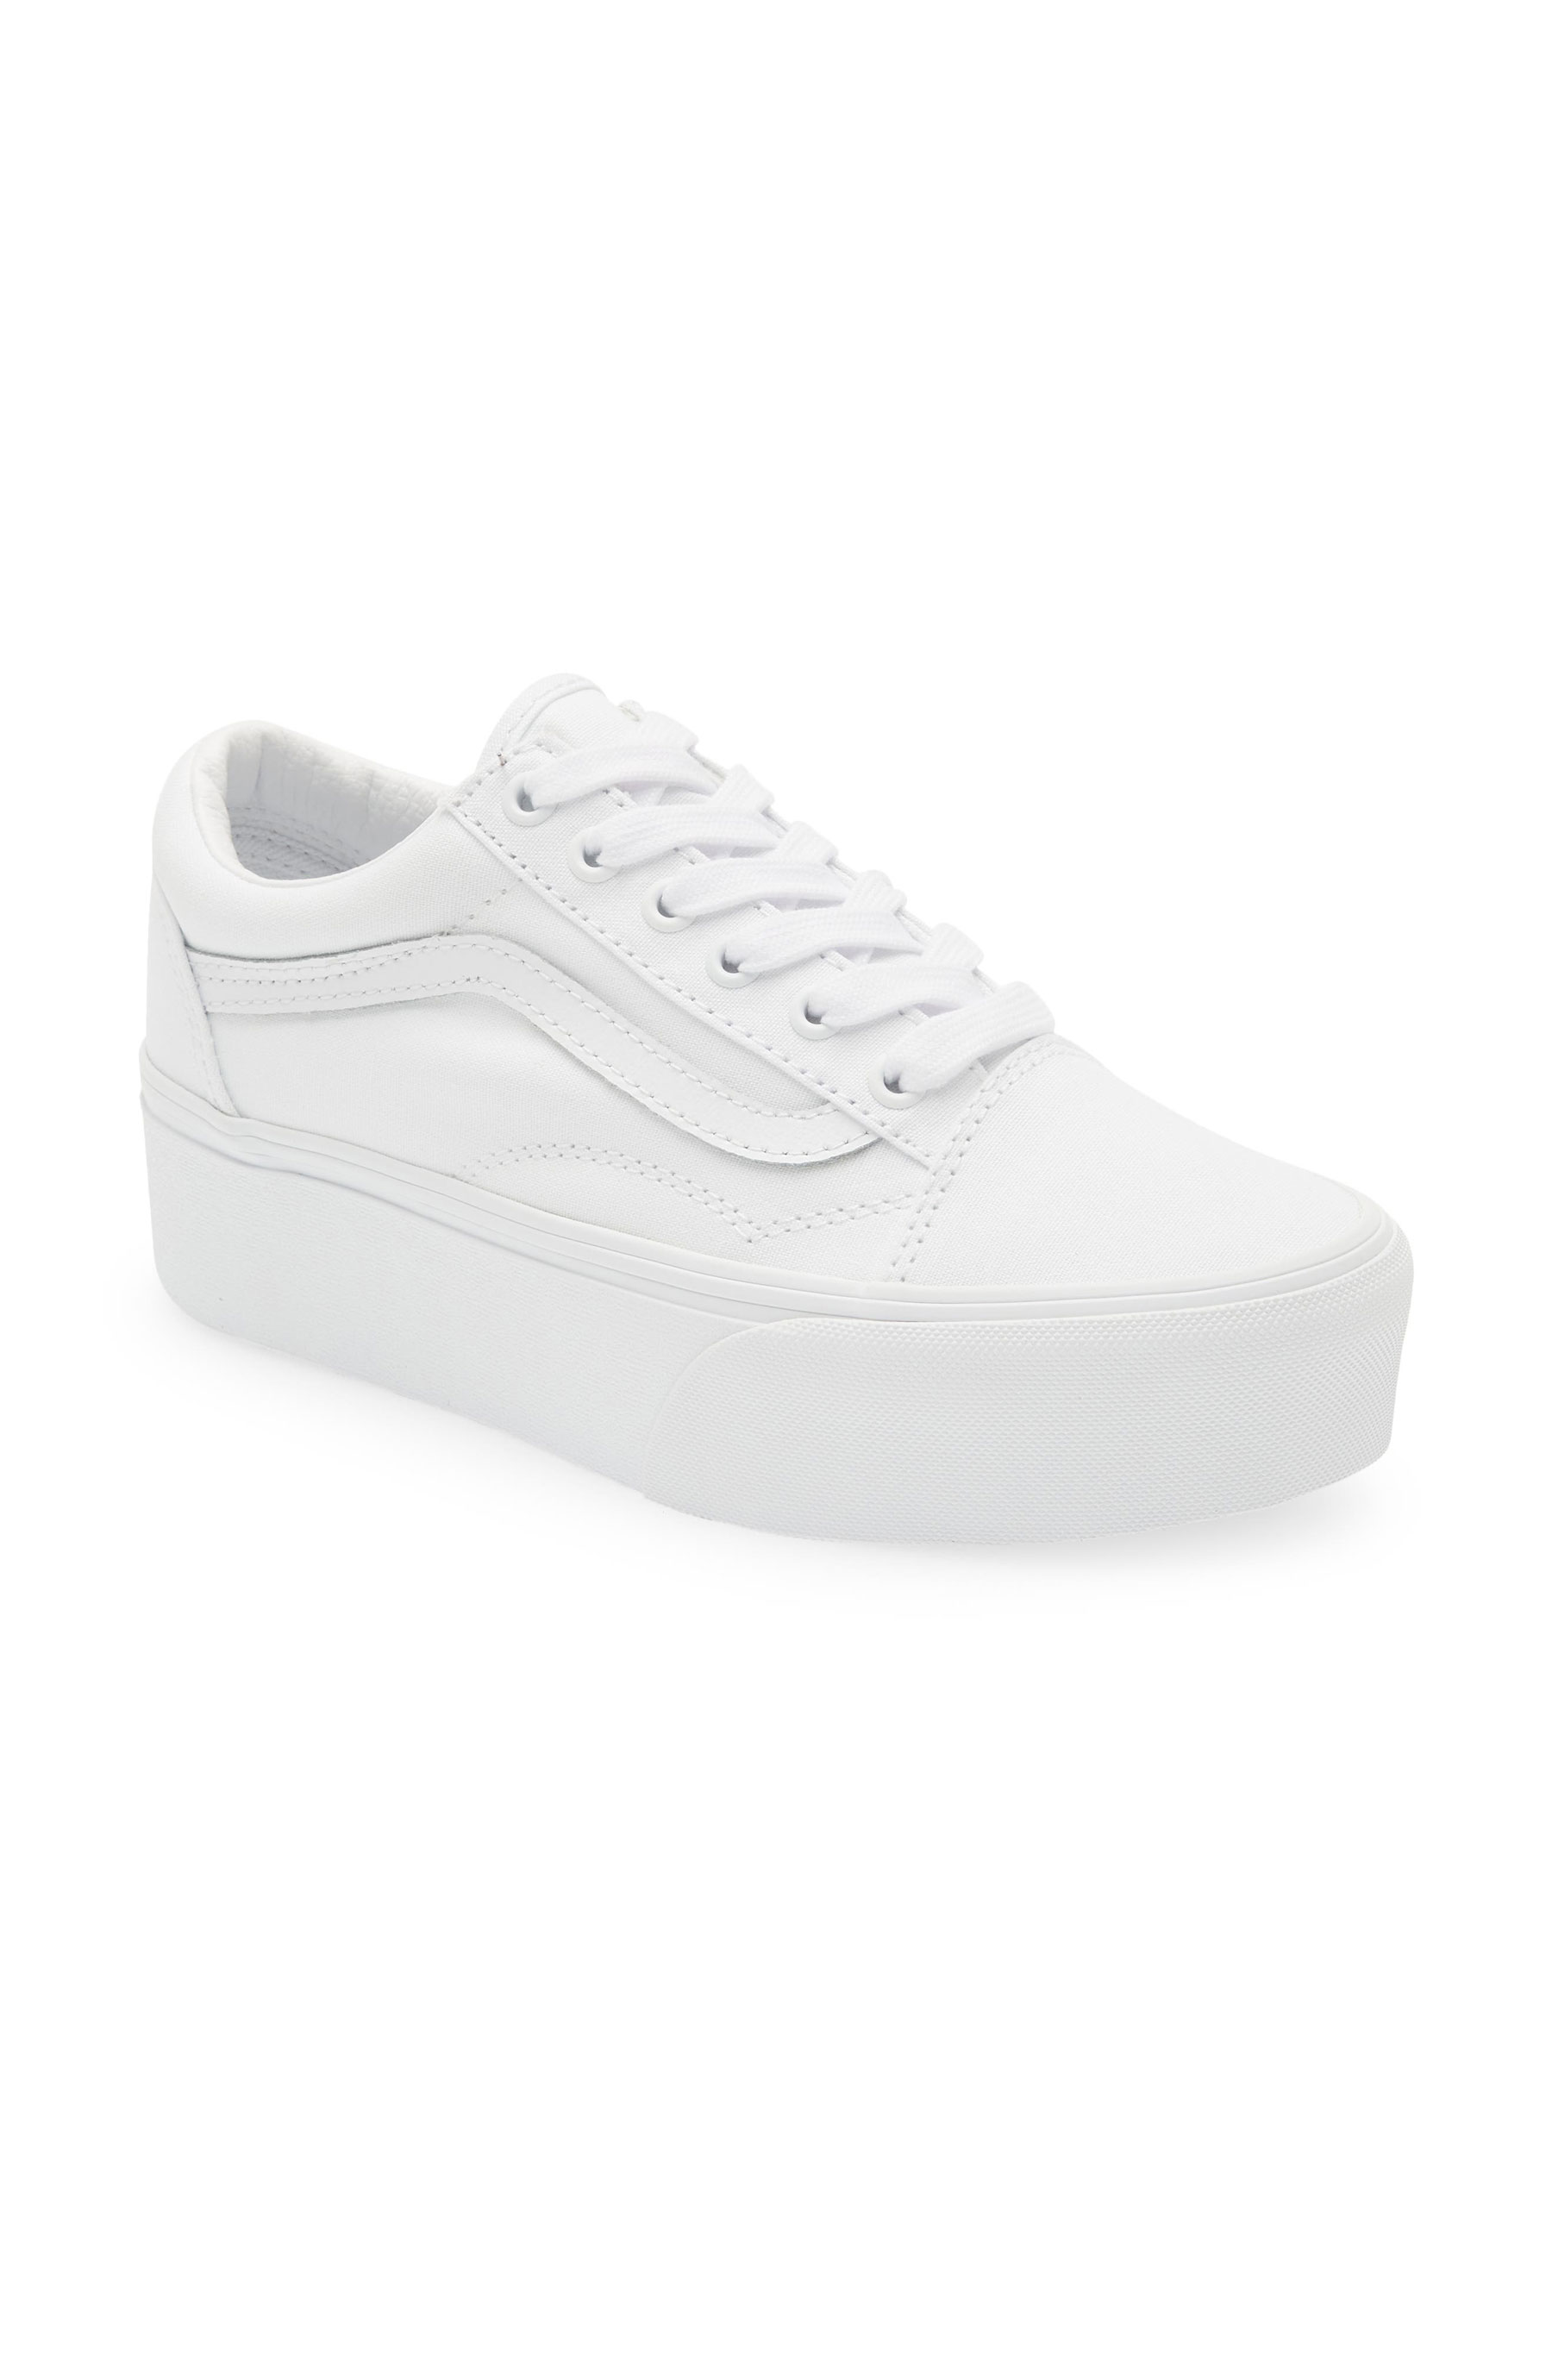 white platform sneakers by Vans